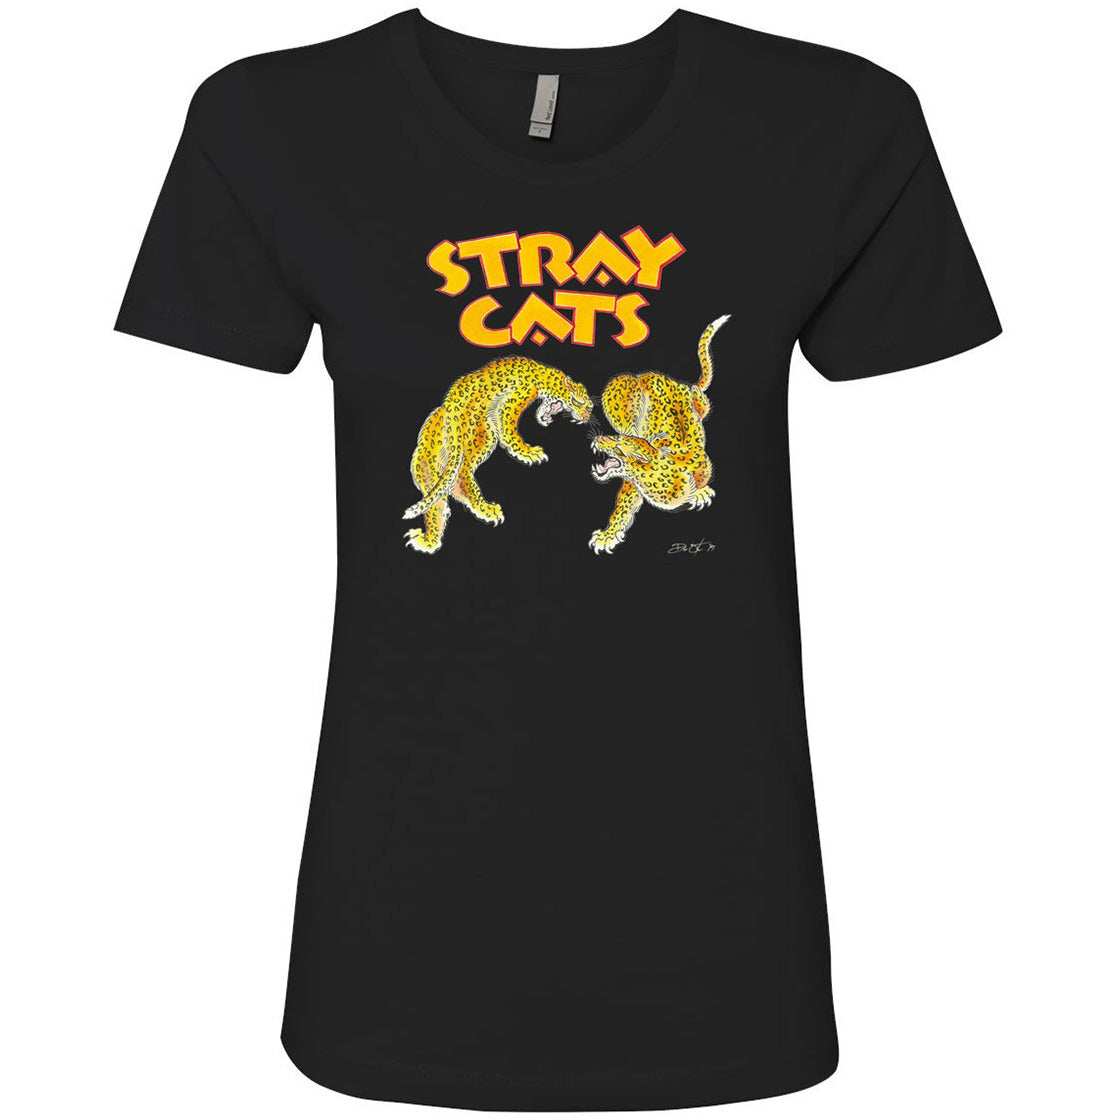 Stray Cats - Ladies Cheetah T-Shirt